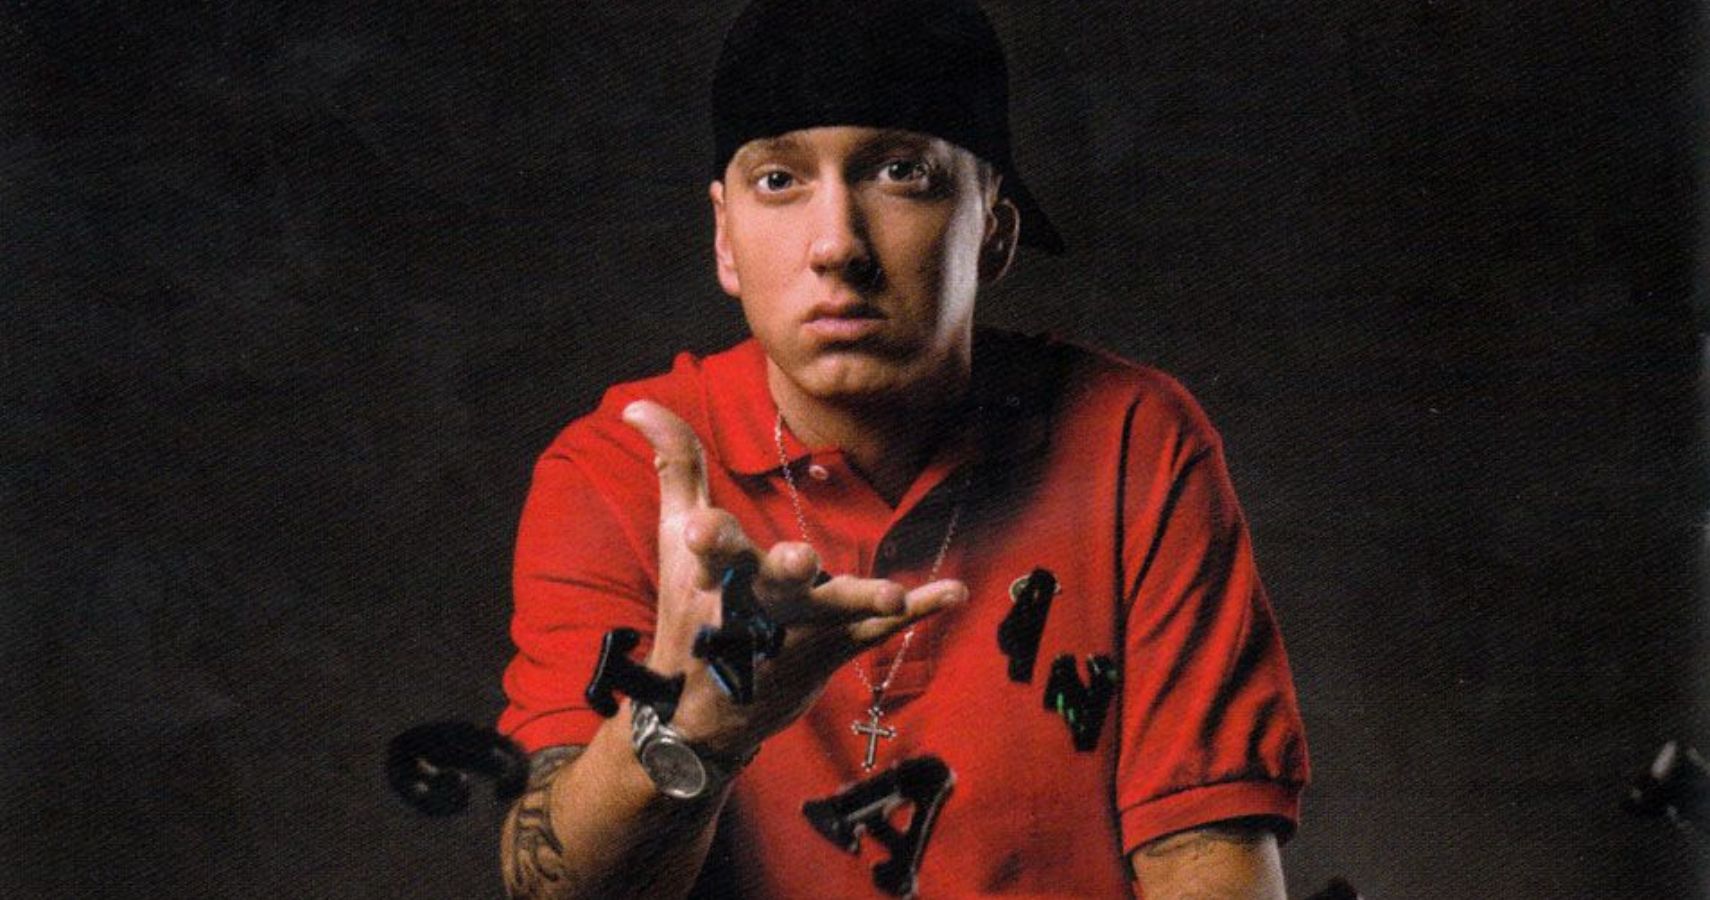 Destaques para o solo: fatos sobre o álbum de retorno de Eminem em 2009, Relapse